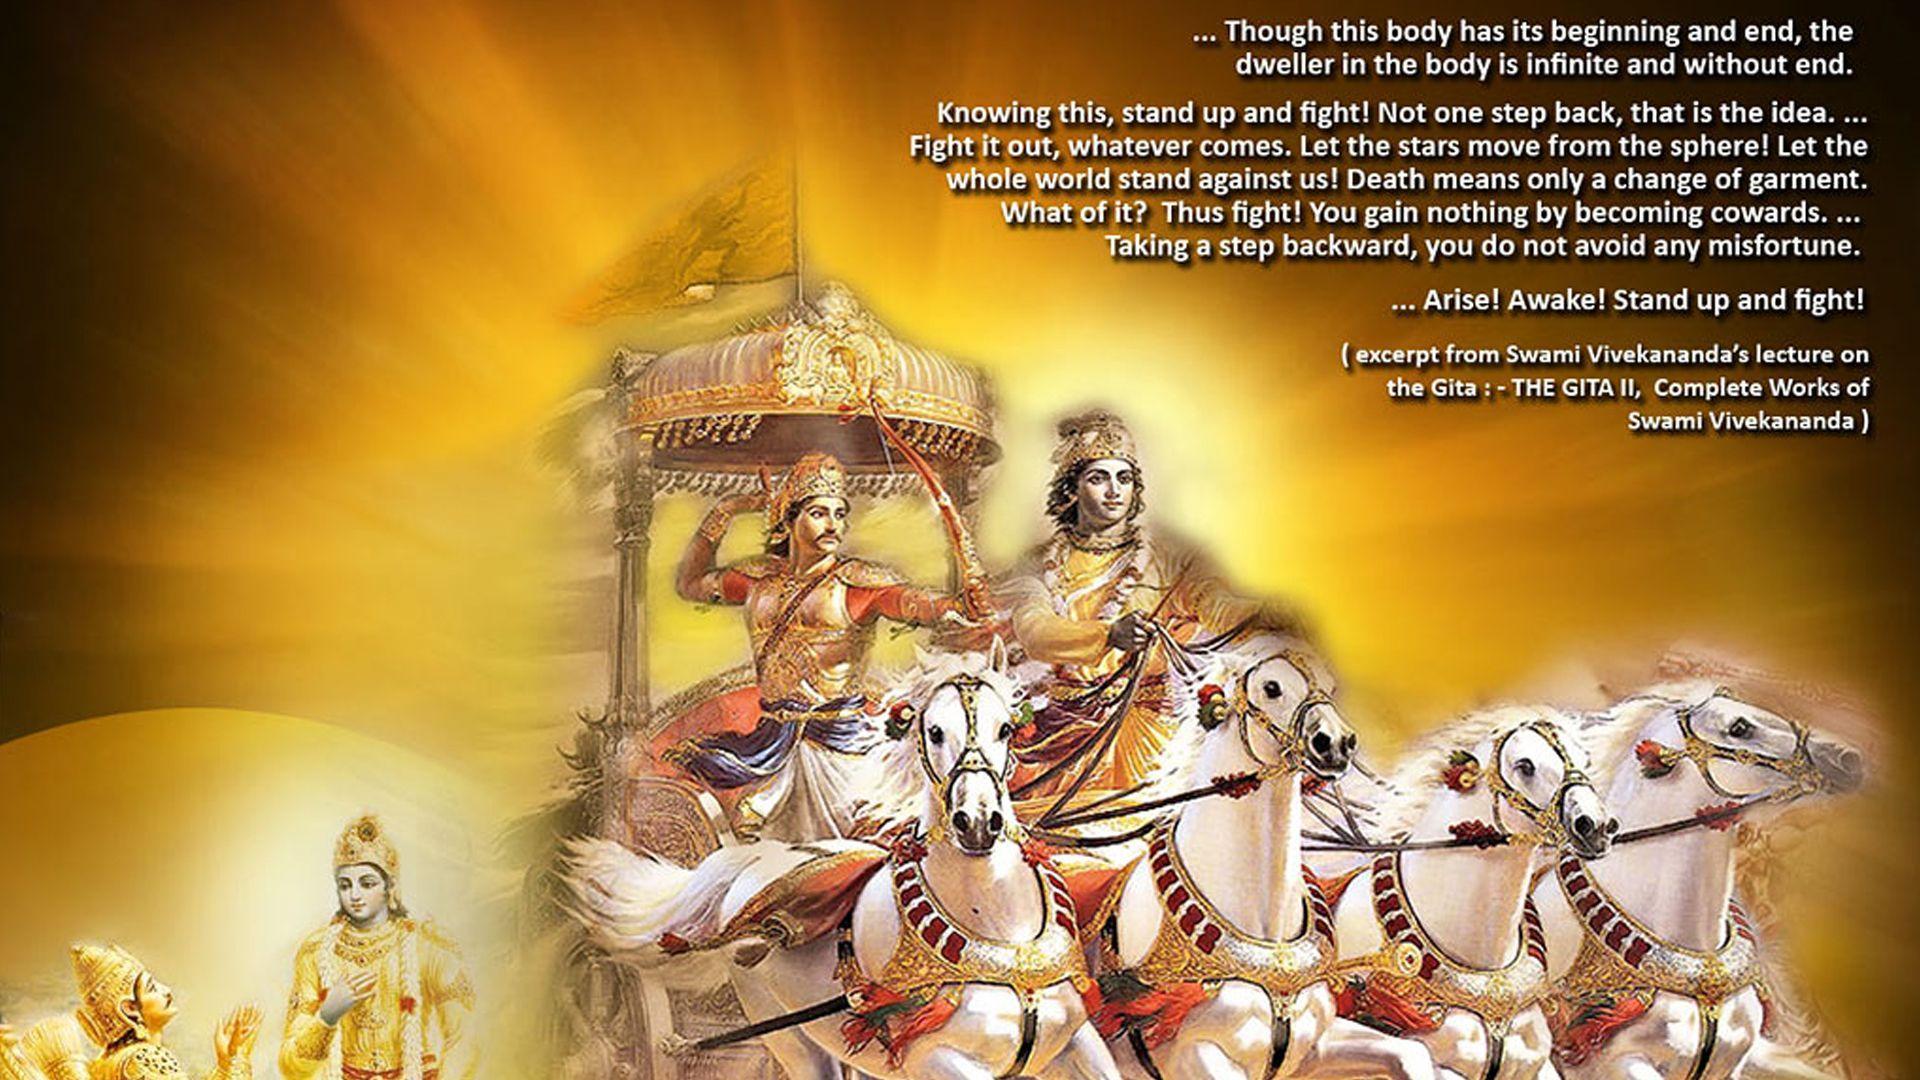 Krishna Arjun Wallpapers - Top Free Krishna Arjun ...